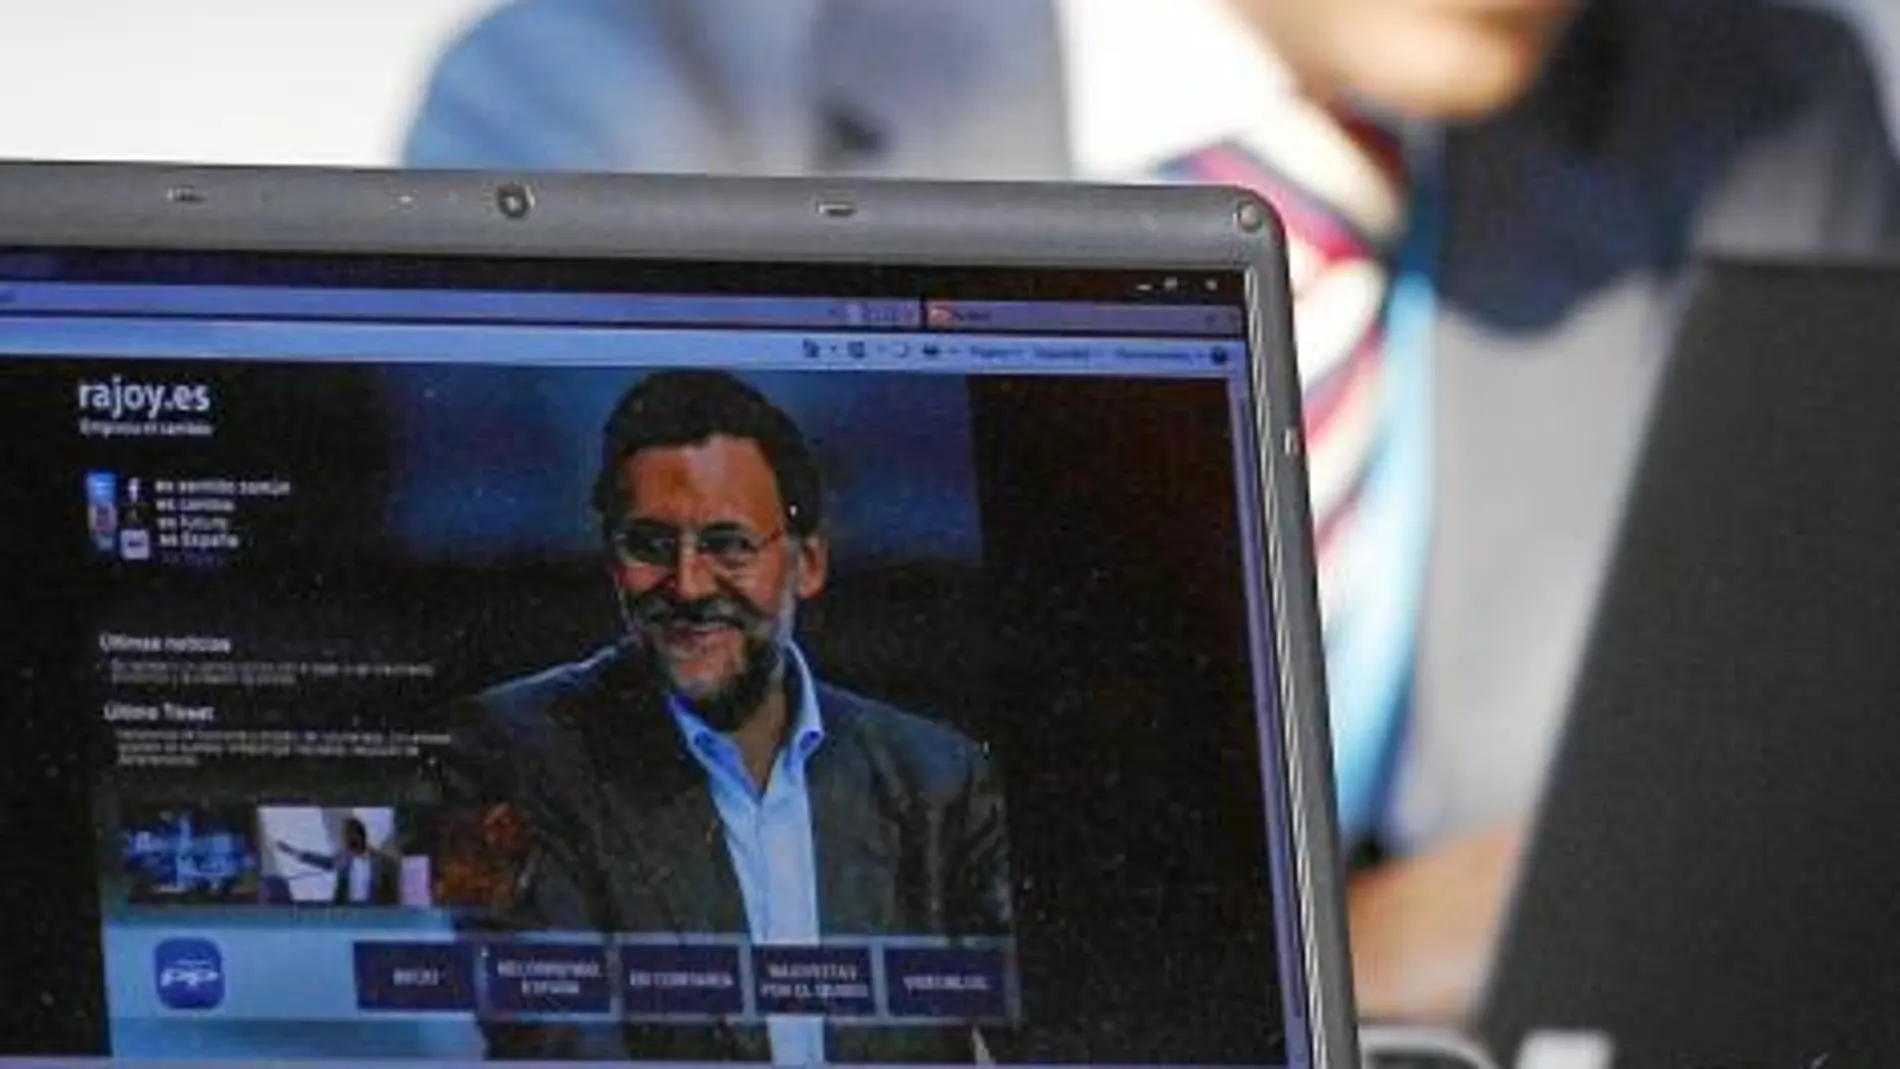 Un asistente a la convención visualiza la web de Rajoy